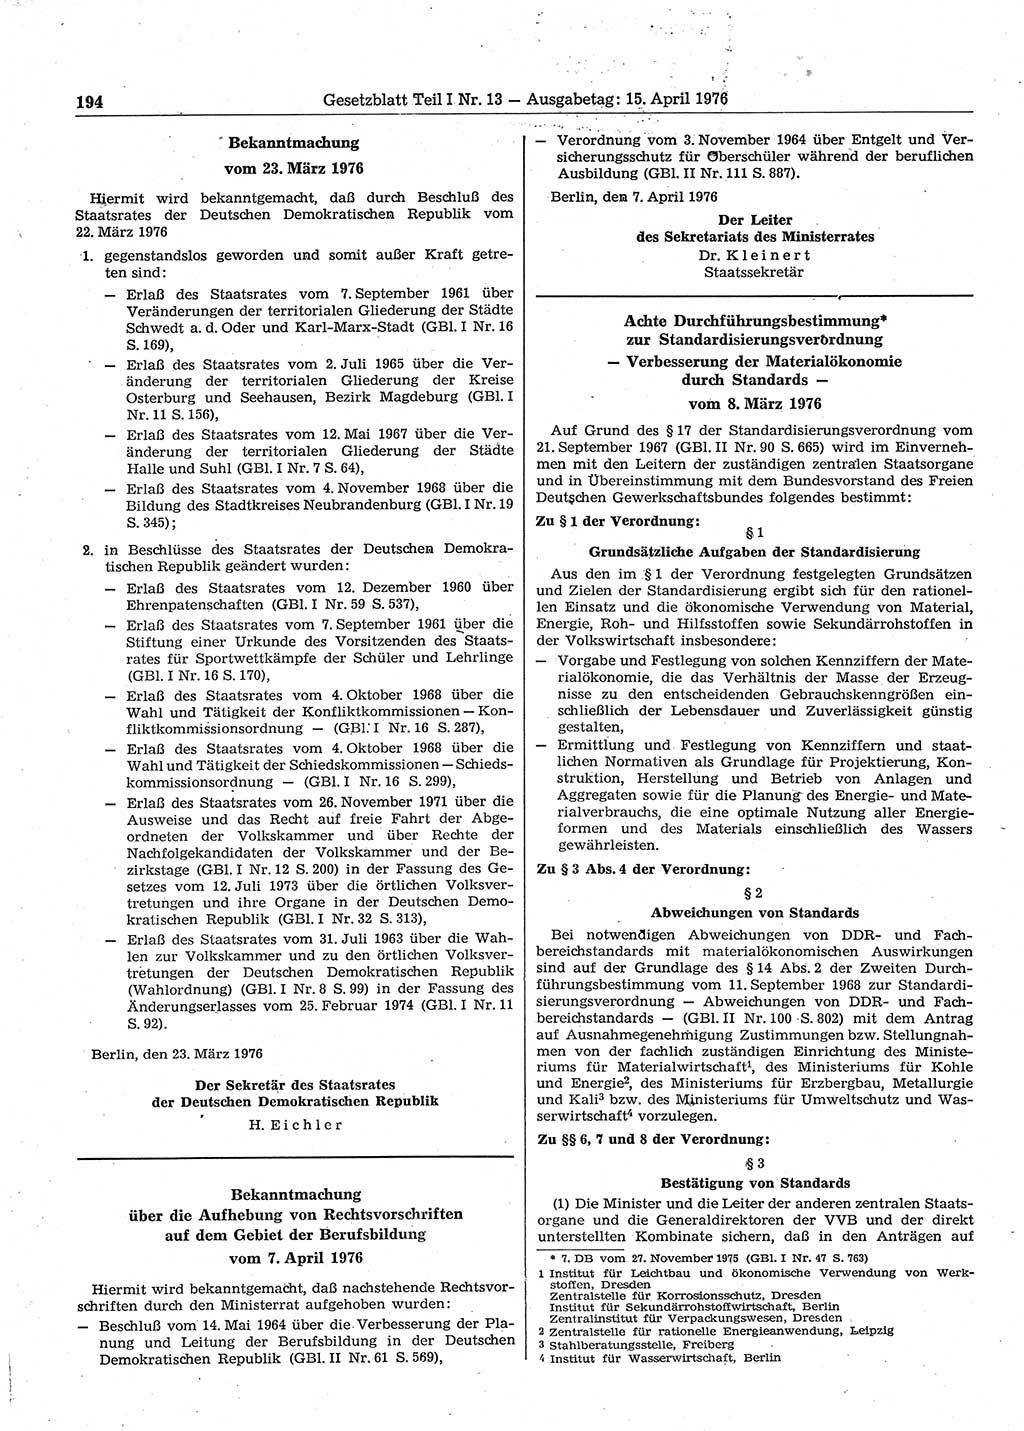 Gesetzblatt (GBl.) der Deutschen Demokratischen Republik (DDR) Teil Ⅰ 1976, Seite 194 (GBl. DDR Ⅰ 1976, S. 194)